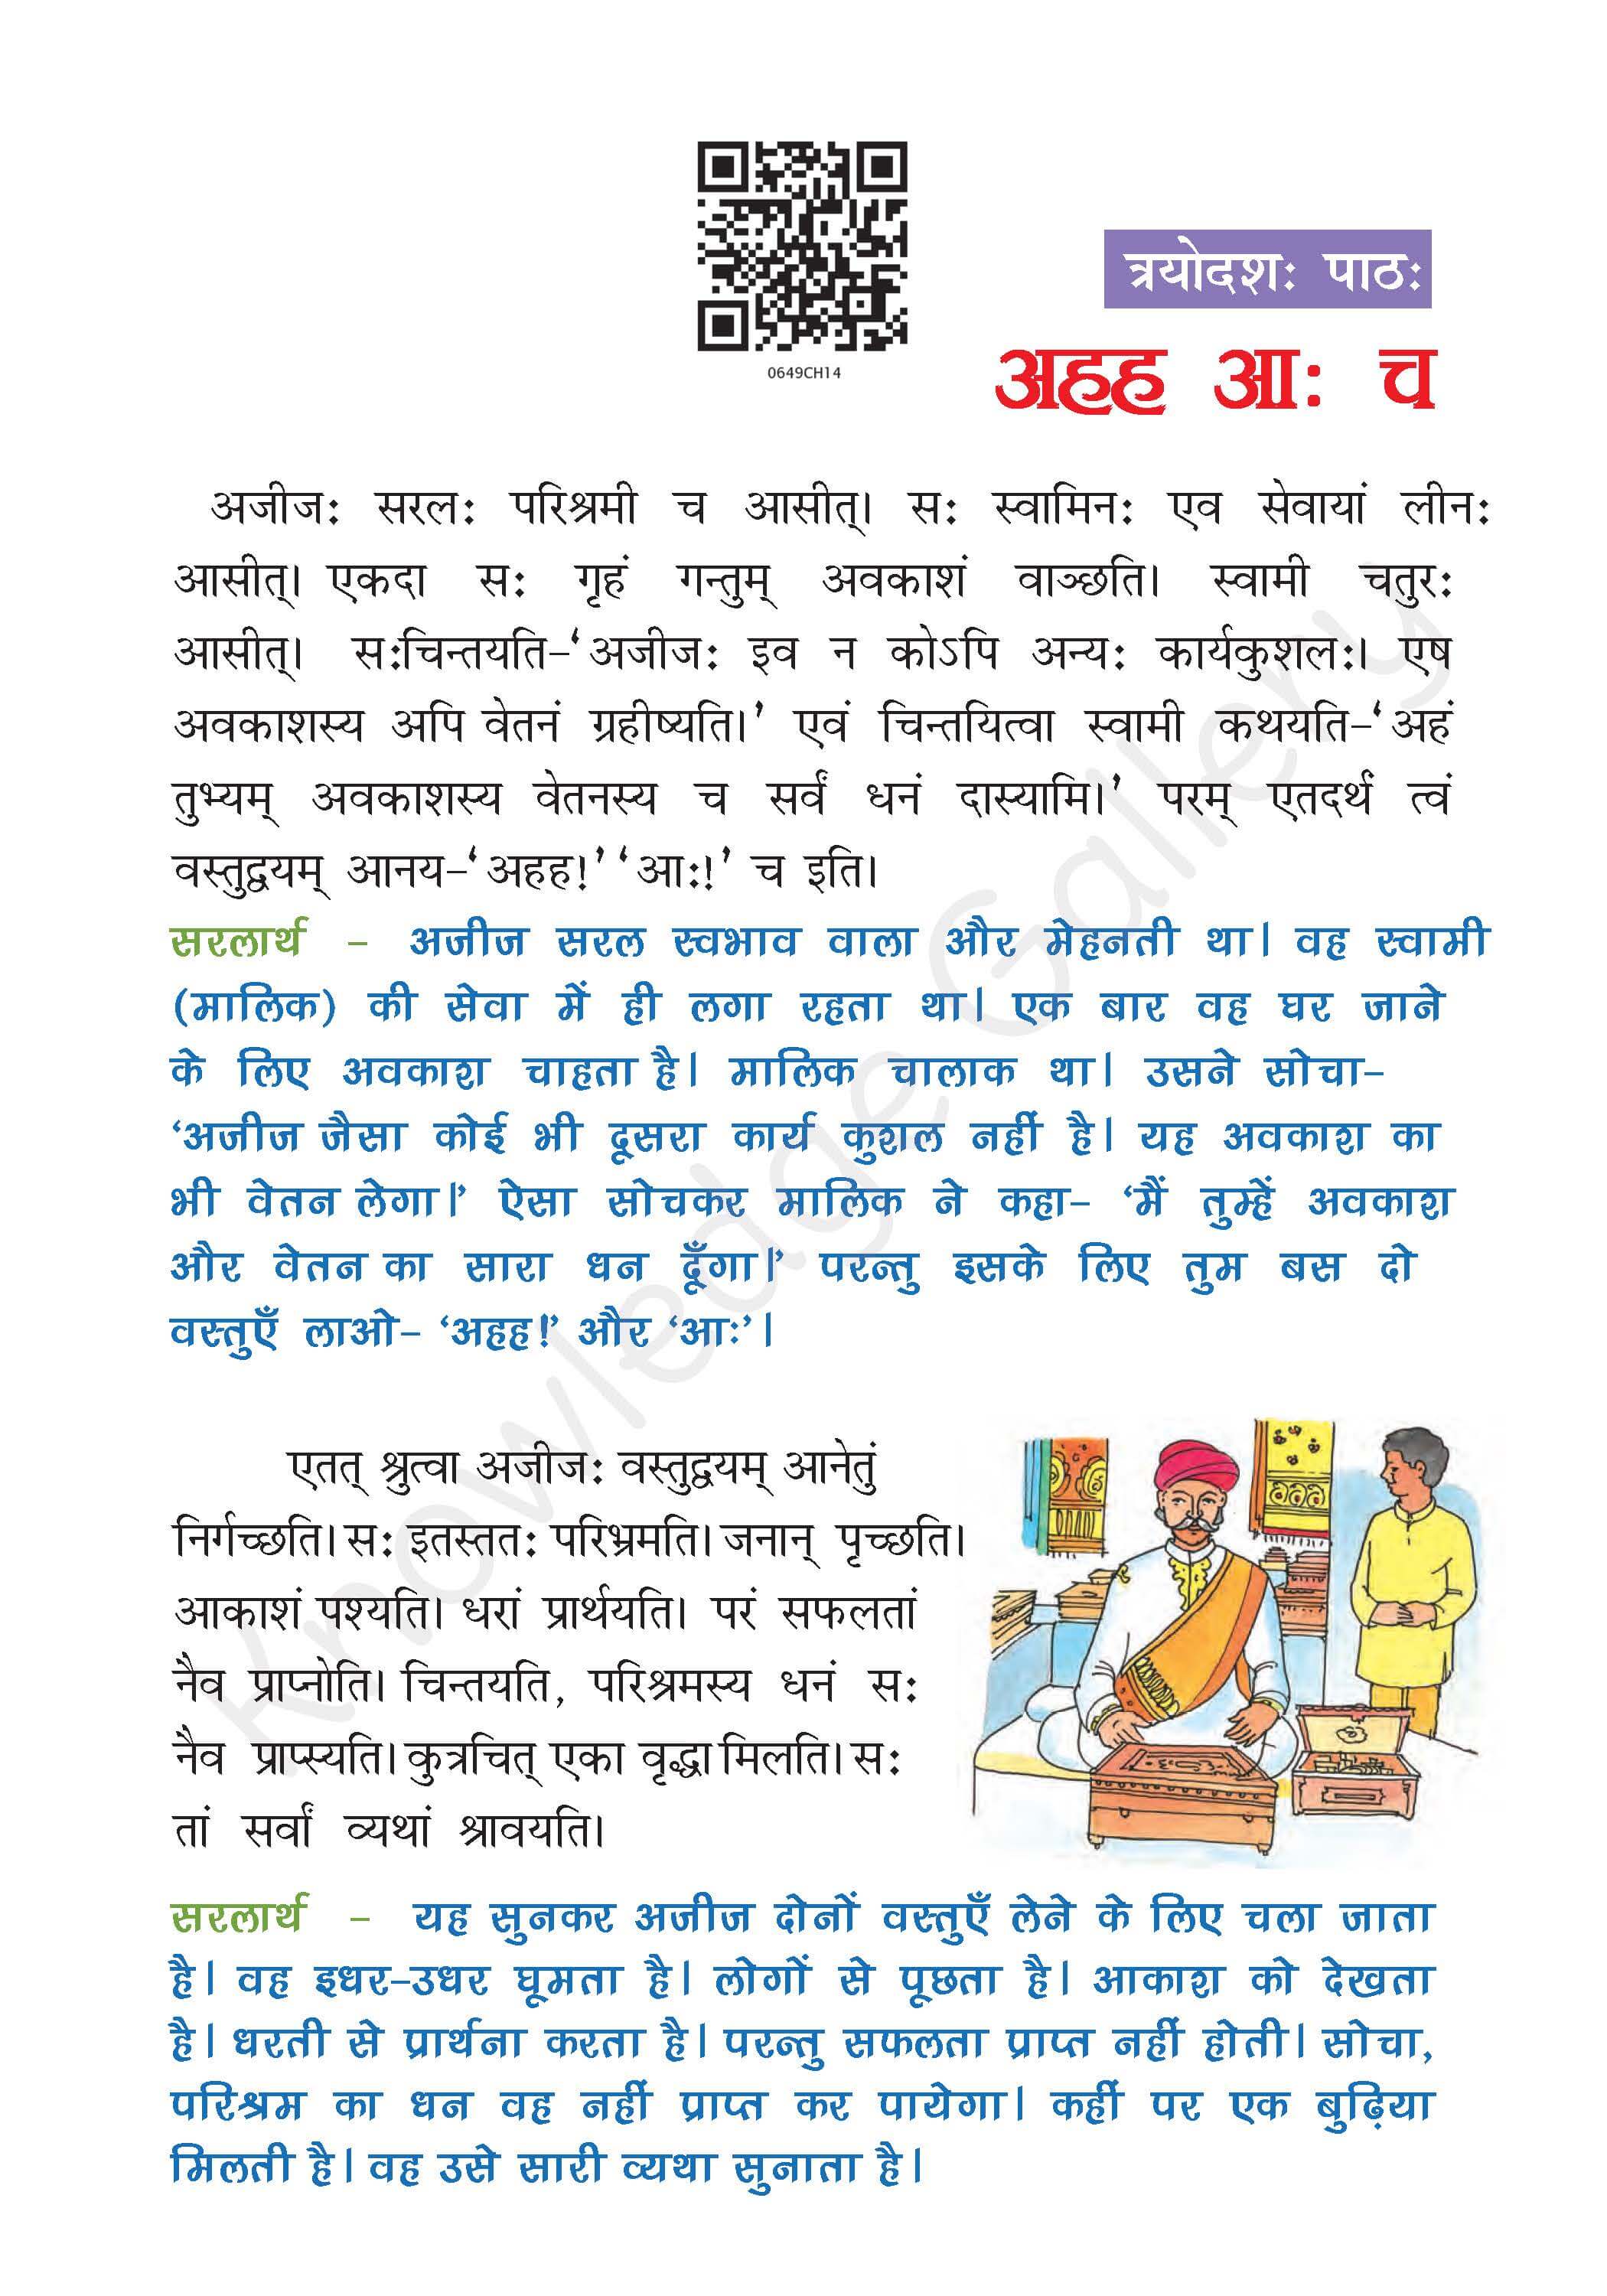 NCERT Solution For Class 6 Sanskrit Chapter 14 part 1